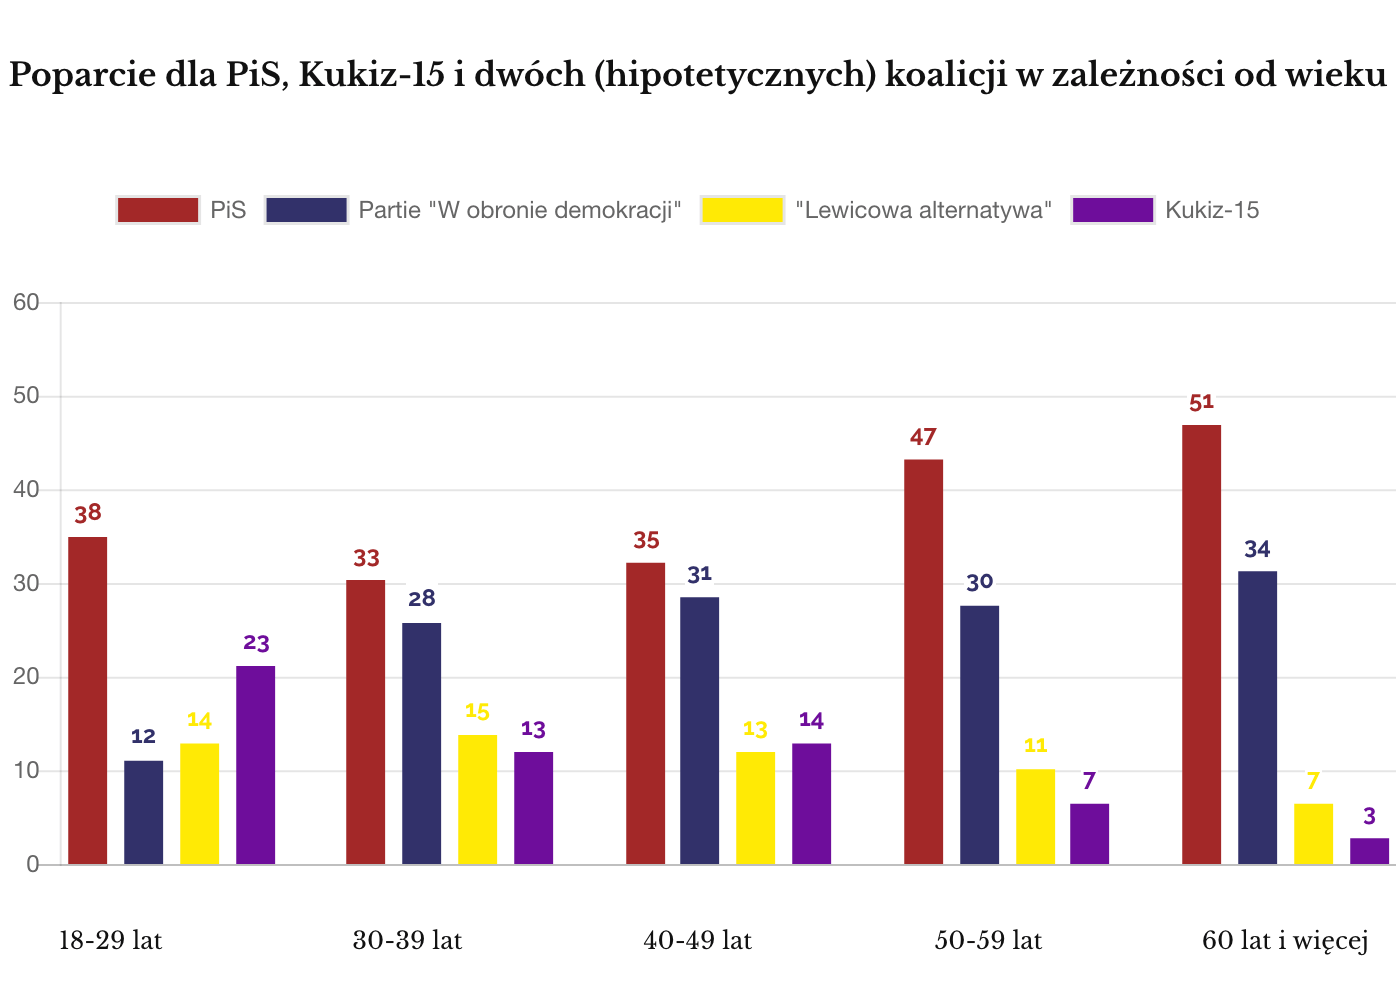 IPSOS styczeń 2018 Poparcie dla PiS, Kukiz i dwóch koalicji w grupach wiekowych